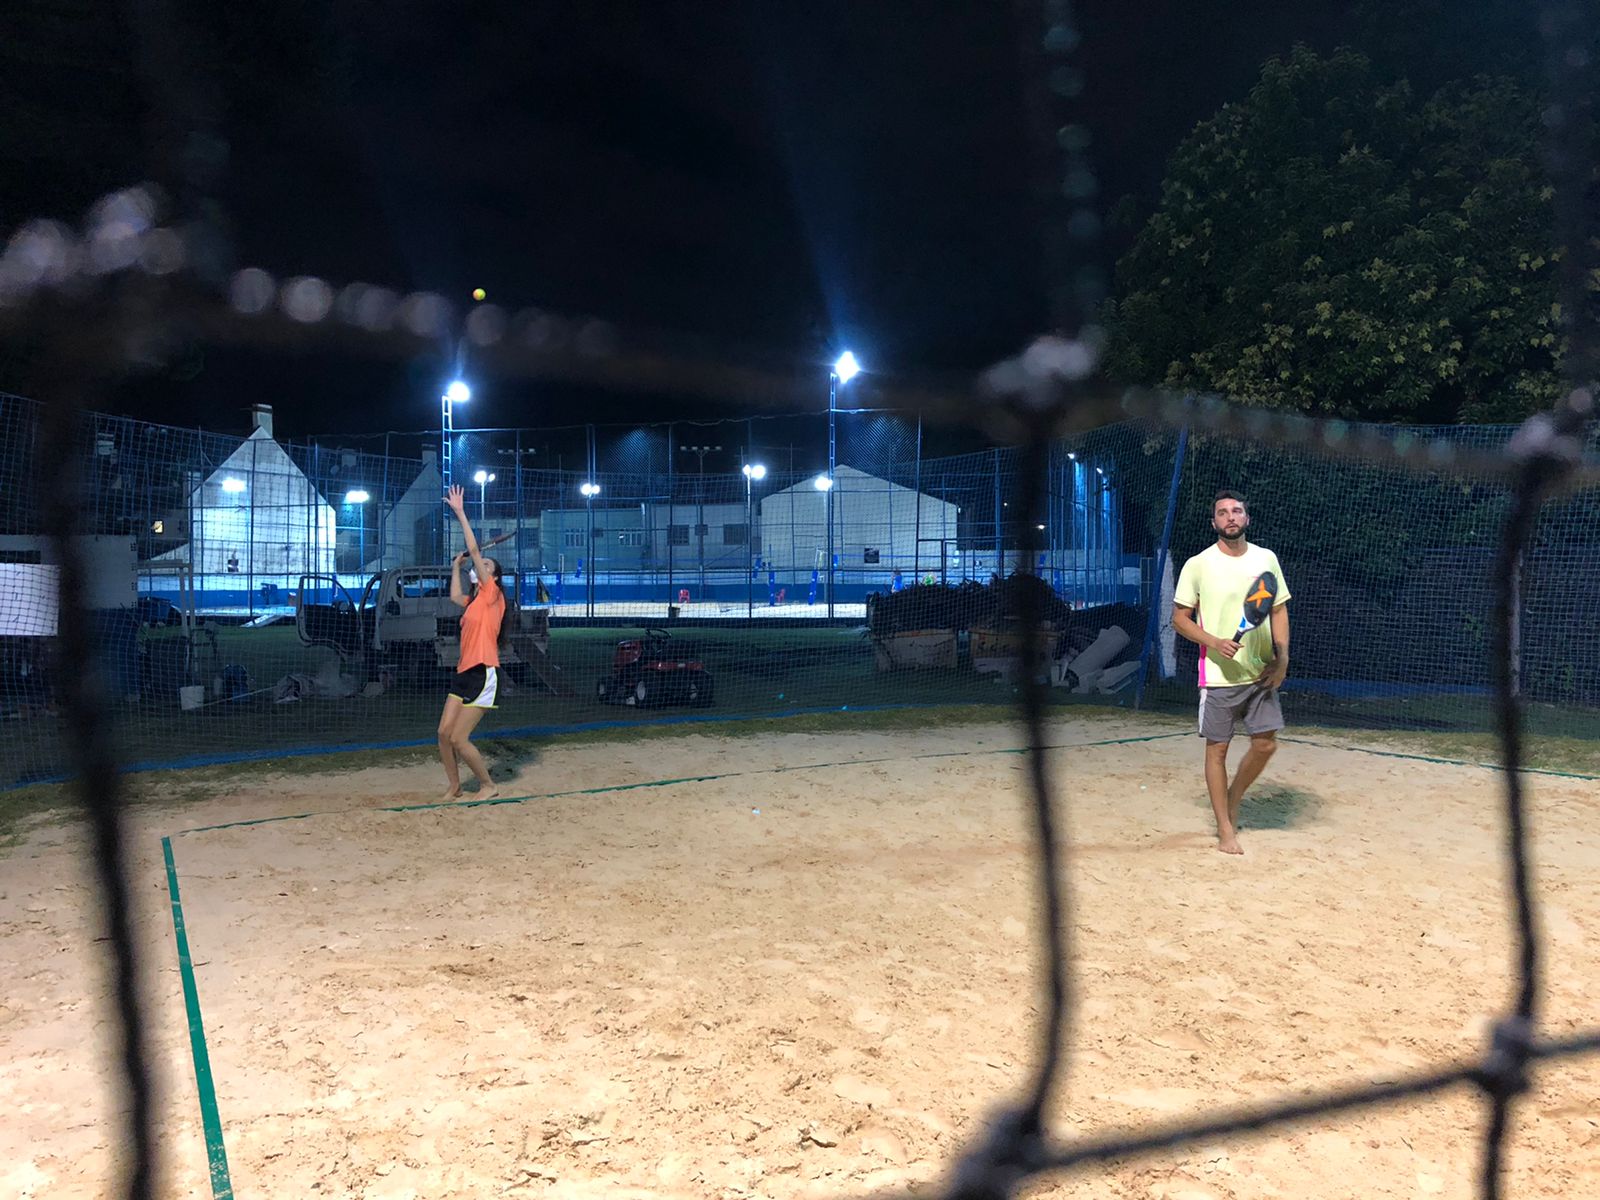 Febre mundial, Beach Tennis ganha destaque em Curitiba